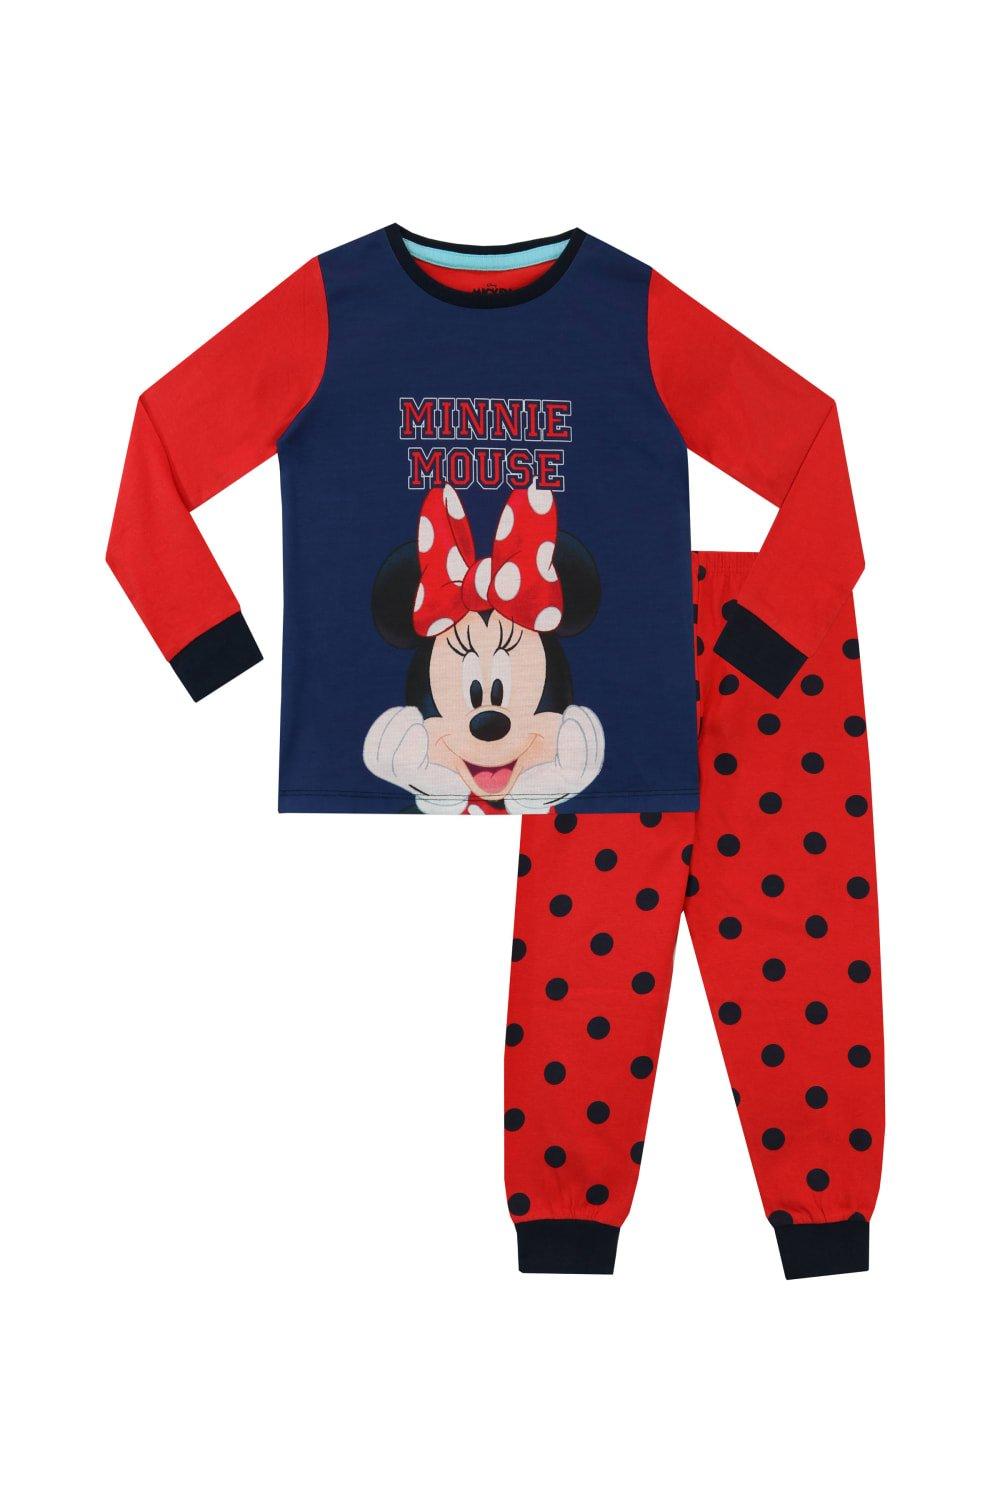 Пижама в горошек с Минни Маус Disney, красный мужская футболка маленькая собачка m темно синий